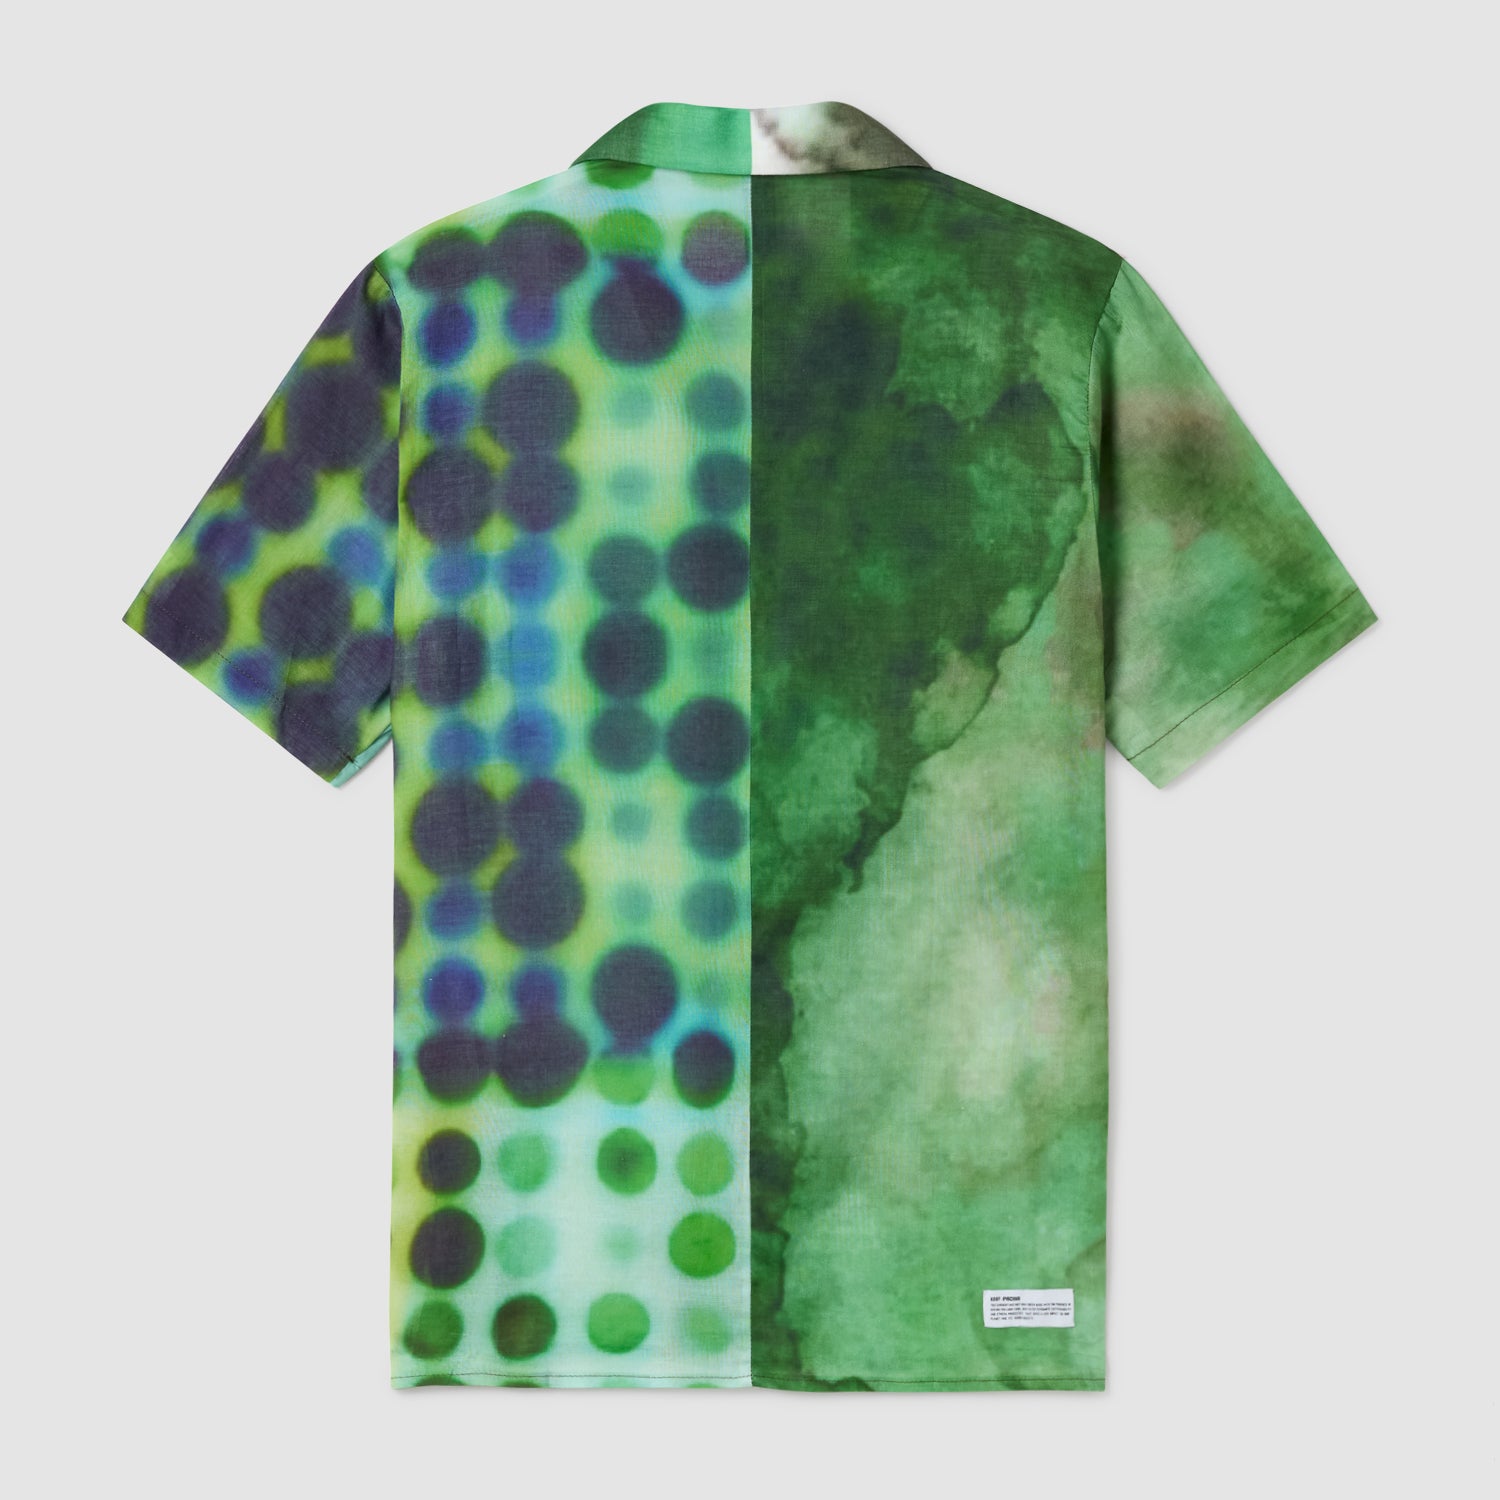 Pacha x KOBF - Green Unisex Shirt